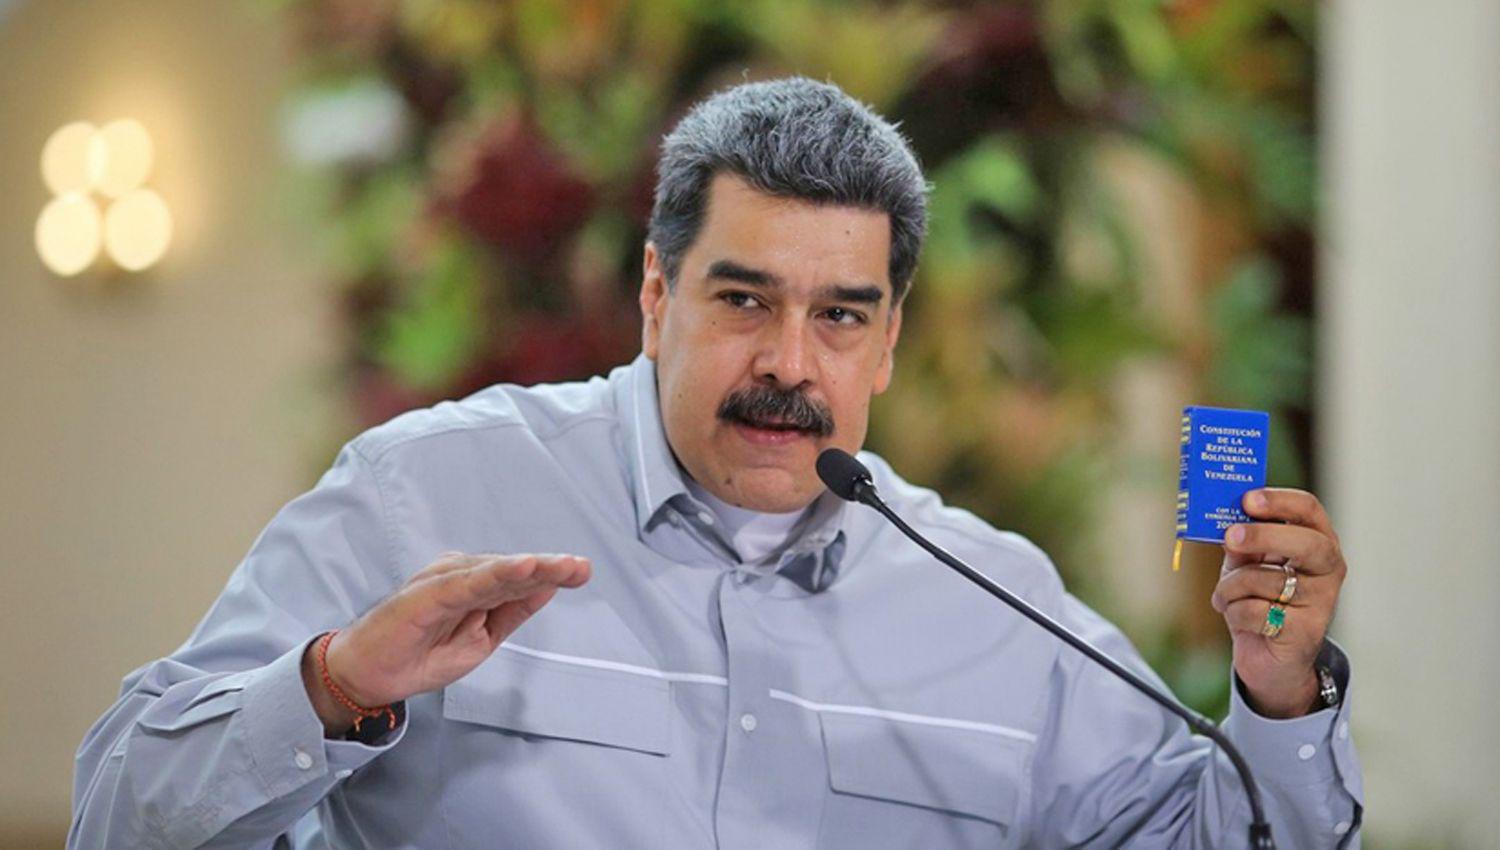 La Unioacuten Europea advirtioacute a Maduro que no reconoceraacute las elecciones si no las aplaza